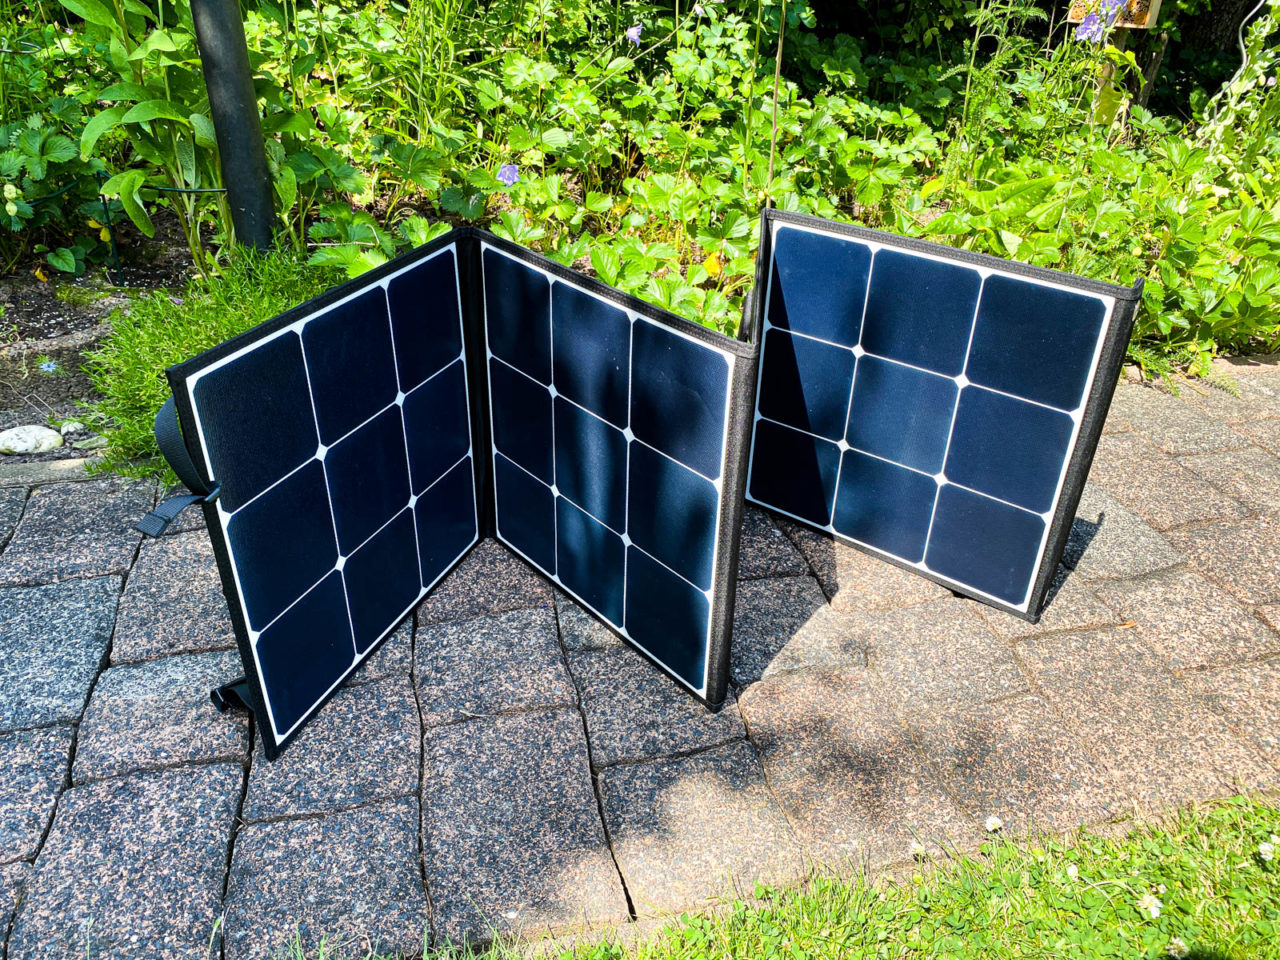 Poweroak Bluetti Sp120 Solarpanel Test Die Solartasche Wird Zusammengefaltet